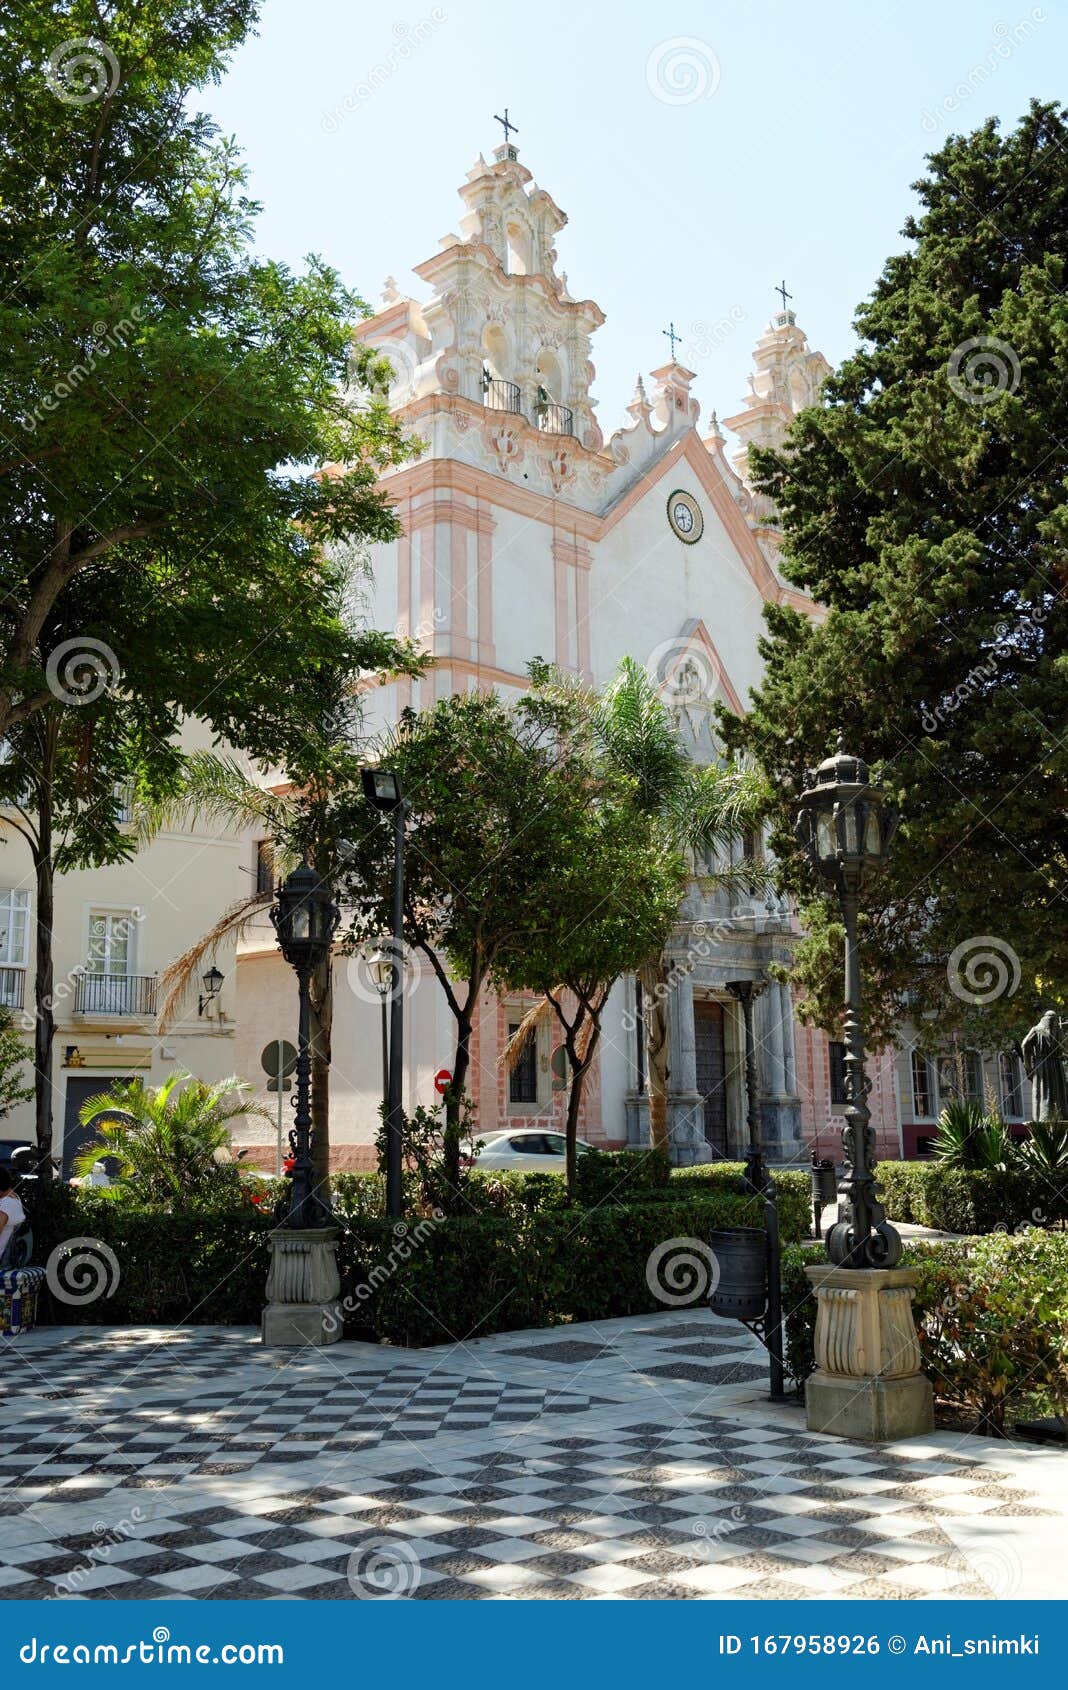 Parroquia De Nuestra Senora Del Carmen Y Santa Teresa, Cadiz, Spain Stock  Photo - Image of baroque, angle: 167958926